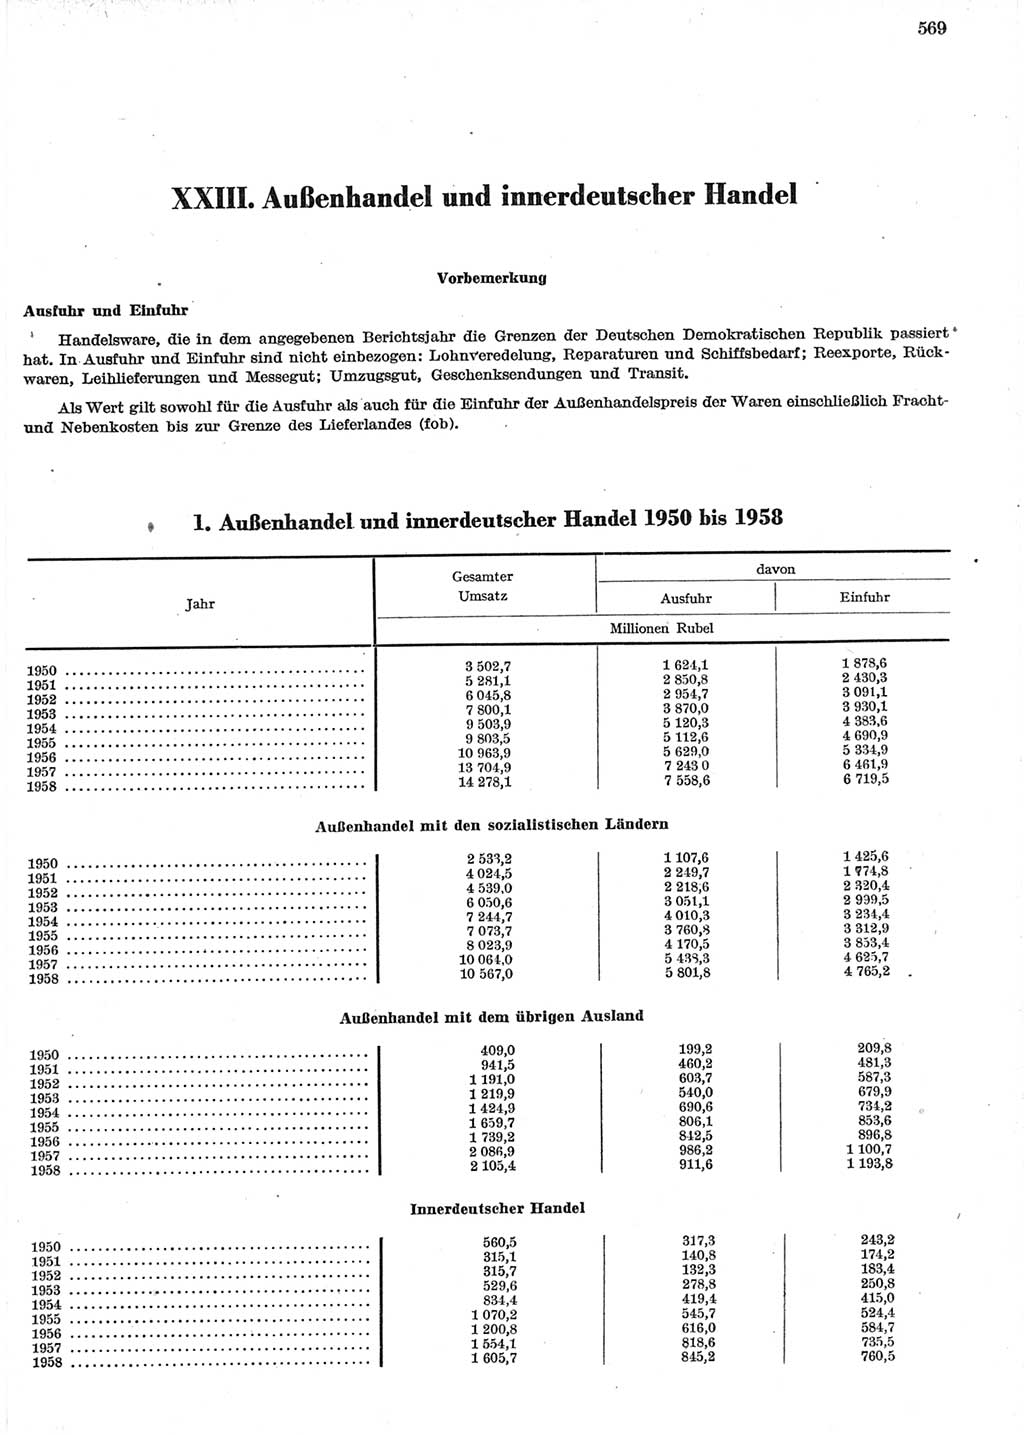 Statistisches Jahrbuch der Deutschen Demokratischen Republik (DDR) 1958, Seite 569 (Stat. Jb. DDR 1958, S. 569)